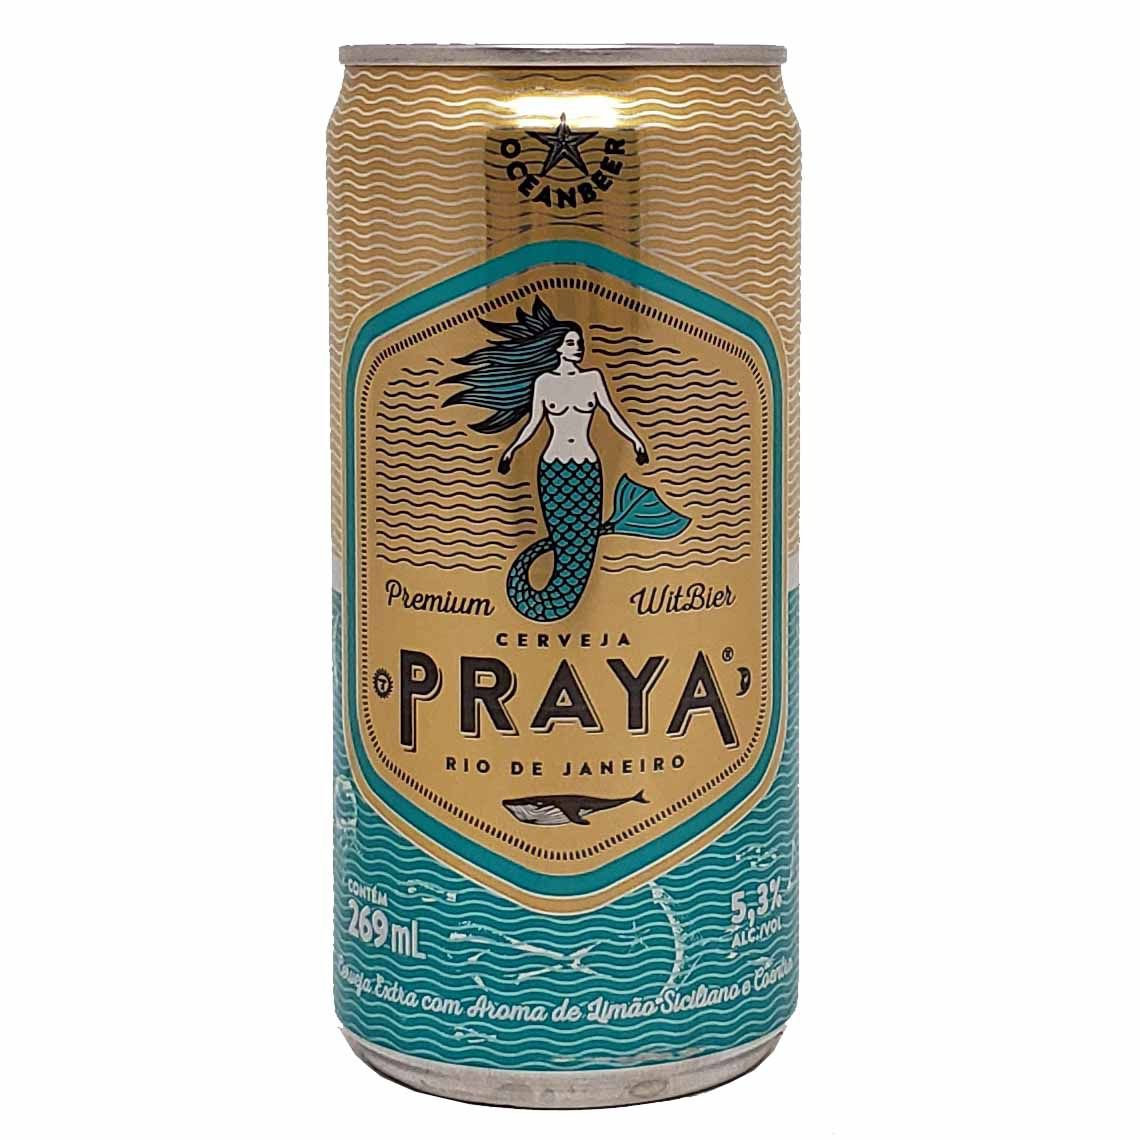 Cerveja Praya Premium Witbier Rio de Janeiro - 269ml -